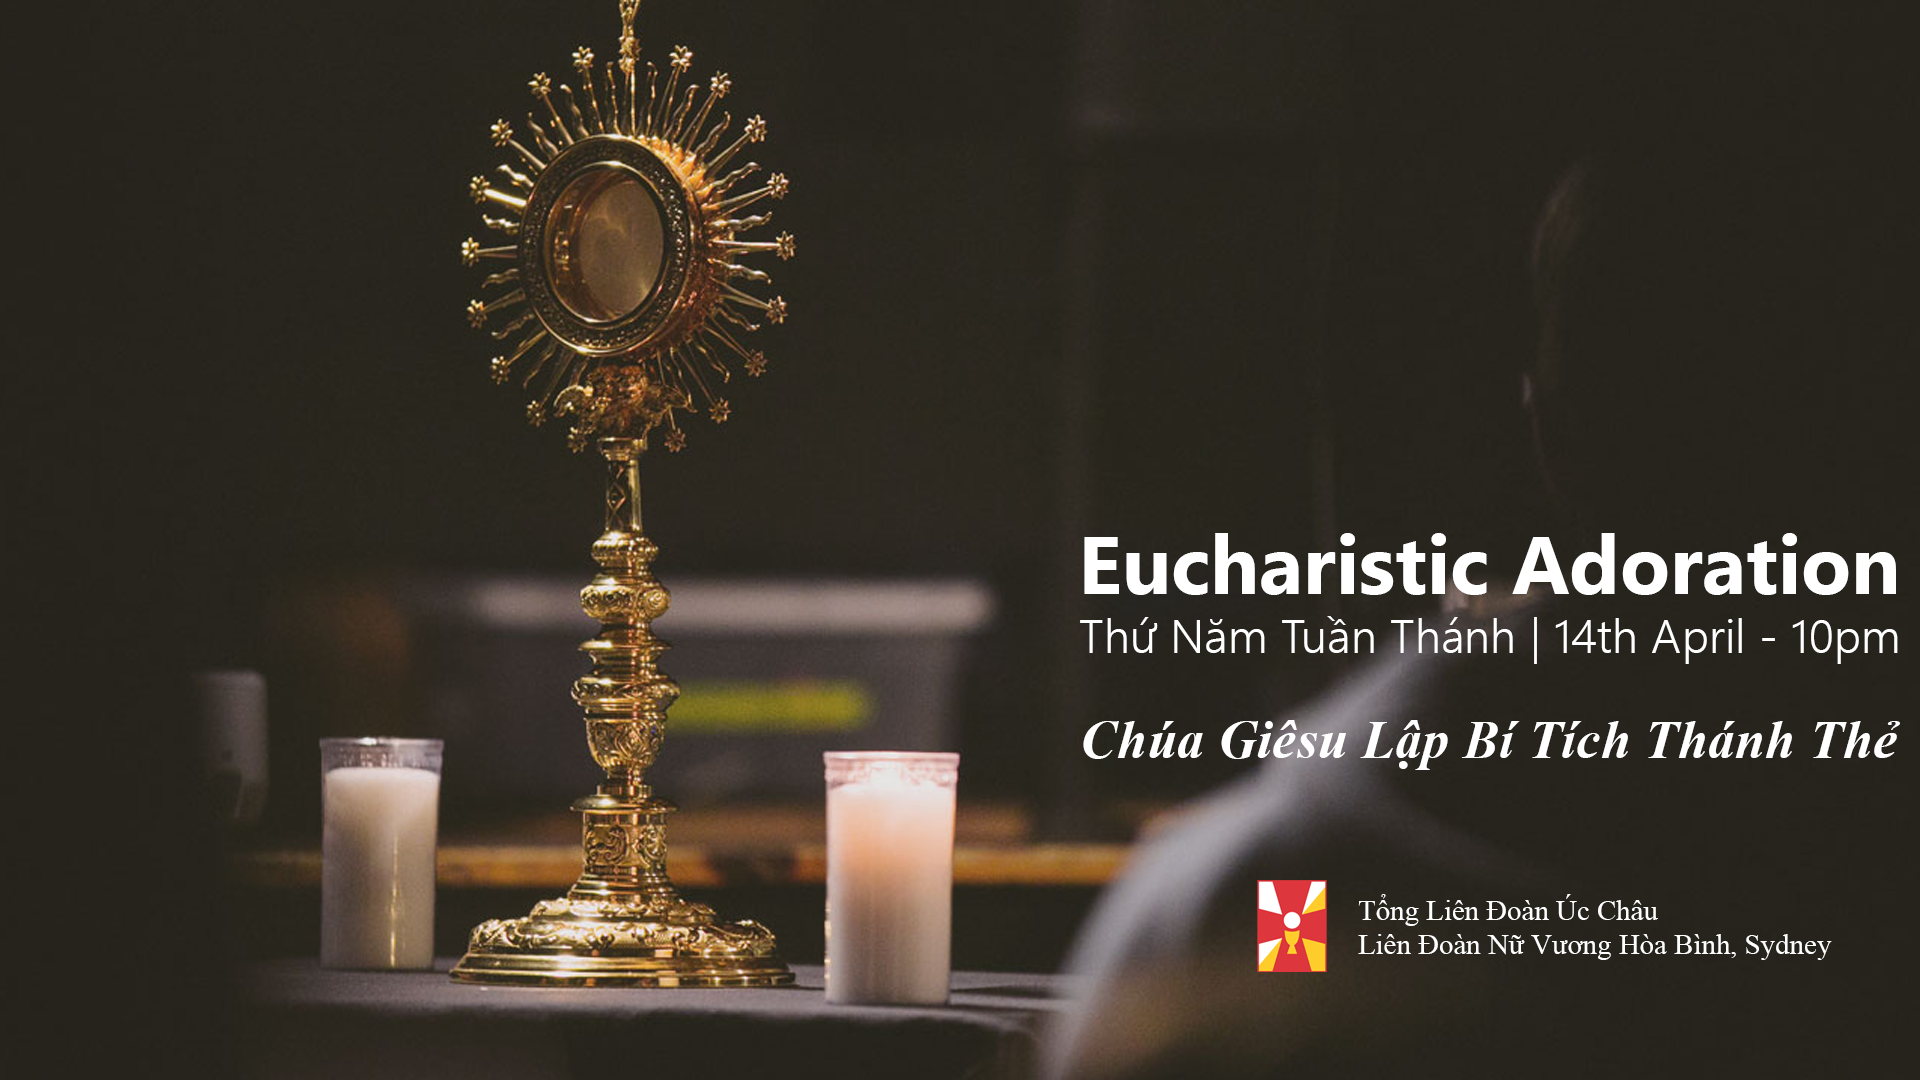 Eucharistic Adoration (Thứ Năm Tuần Thánh)